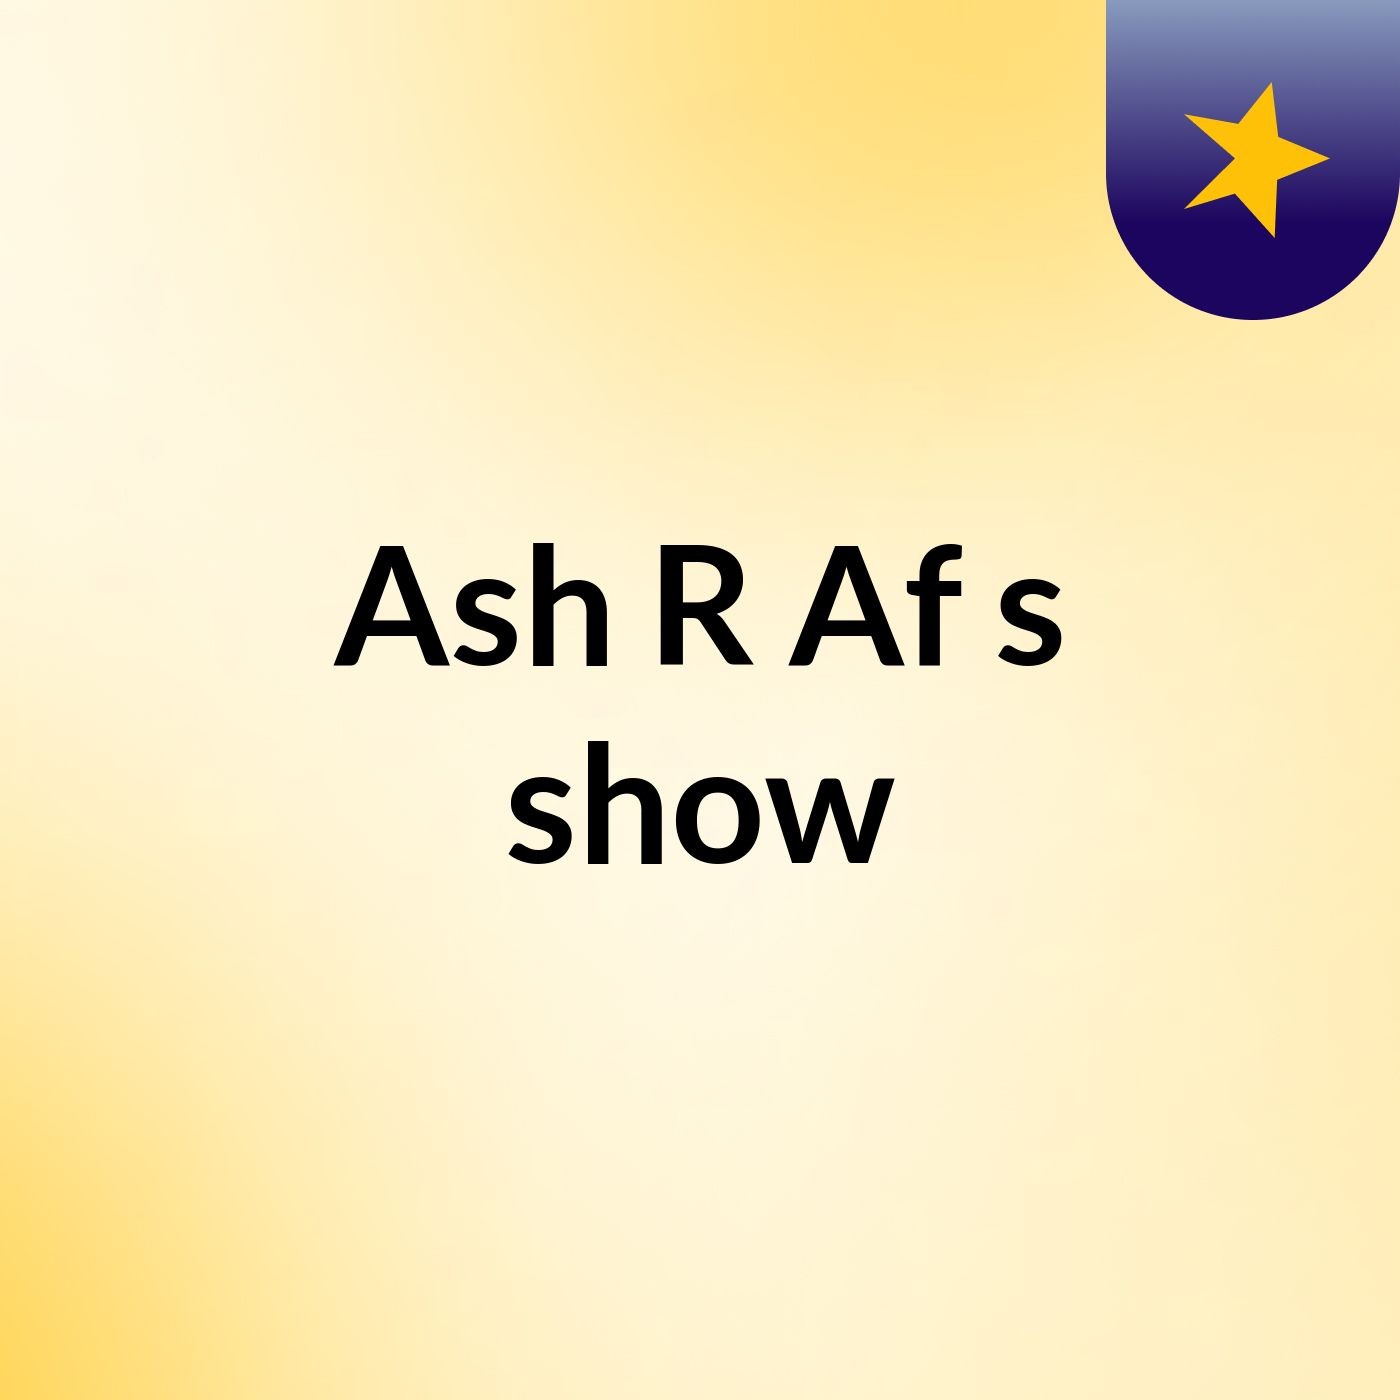 Ash R Af's show